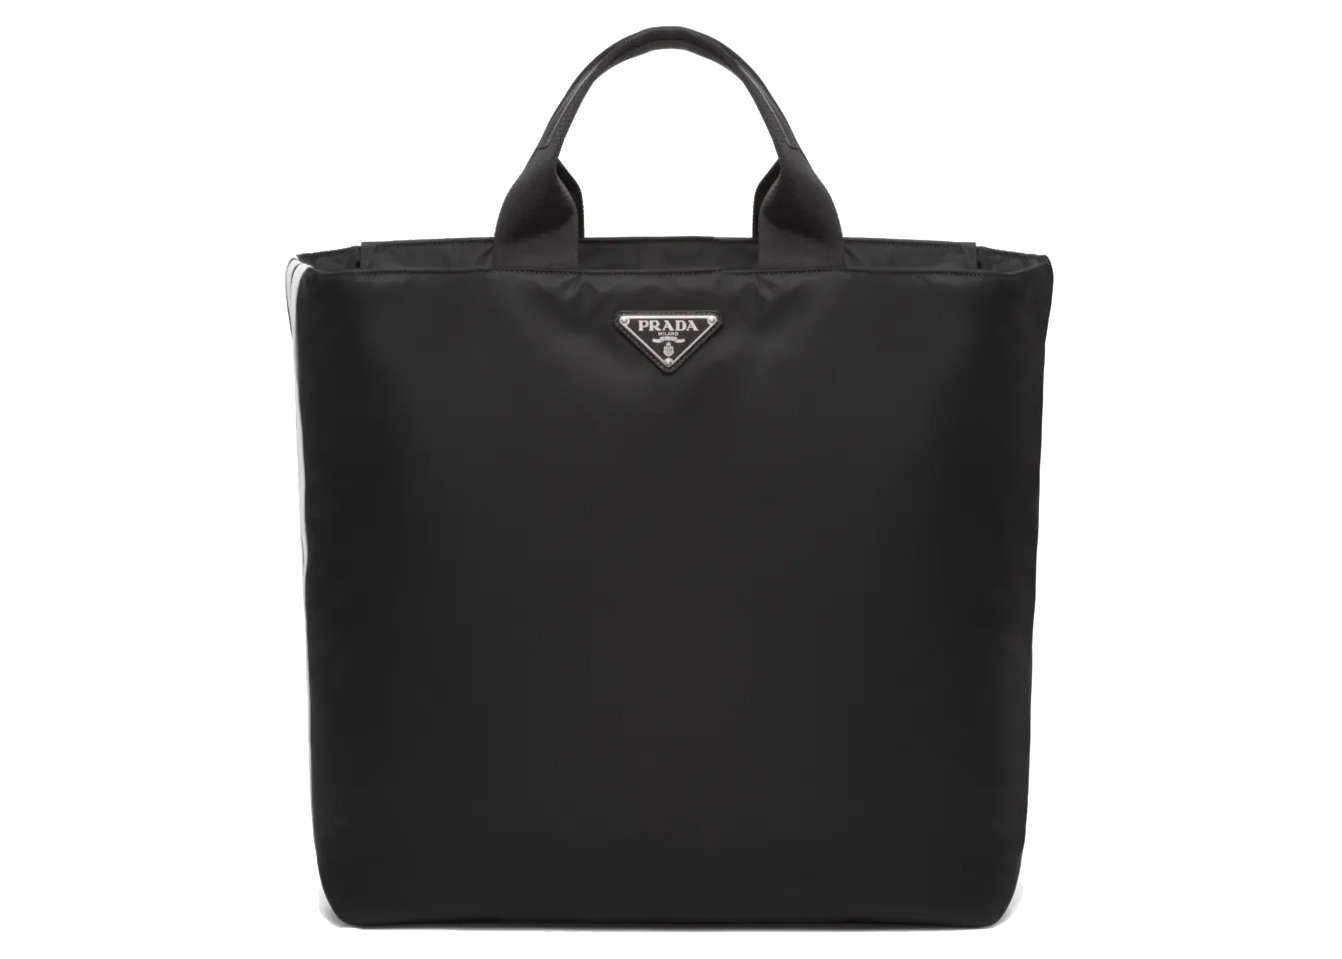 Prada adidas Re-Nylon Shopping Bag Black in Nylon/Leather with ...